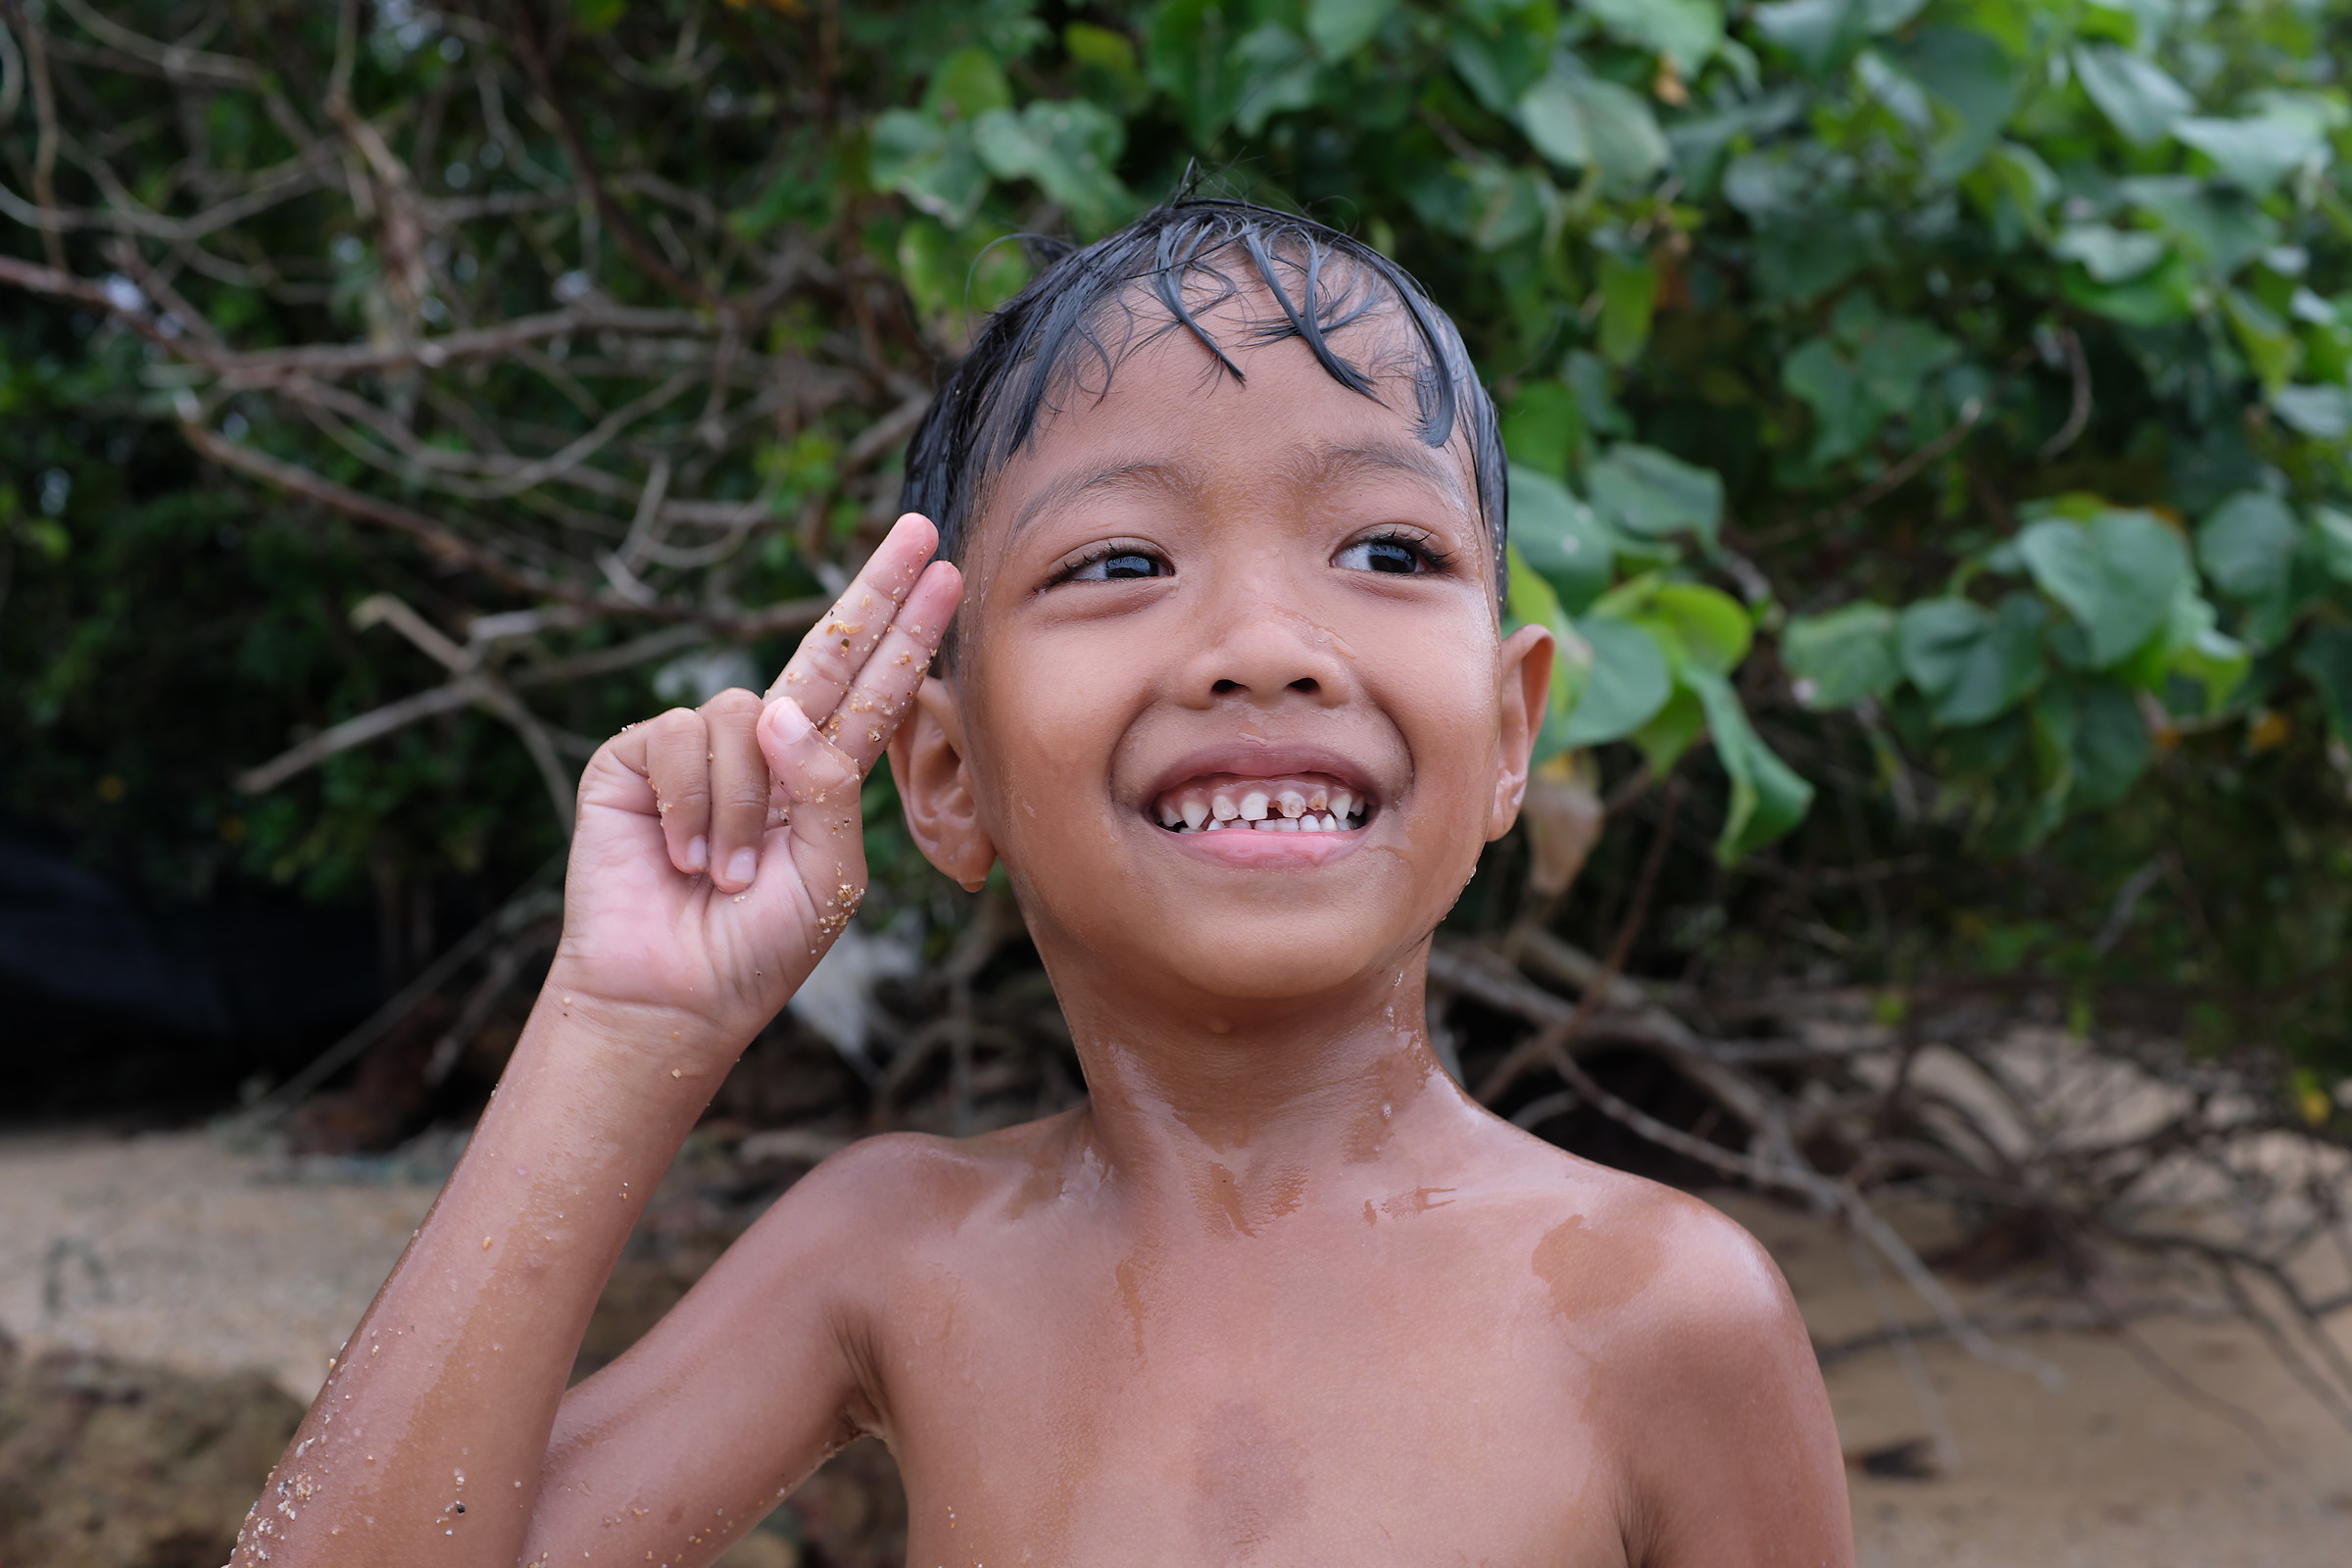 Thai Kid at the beach...